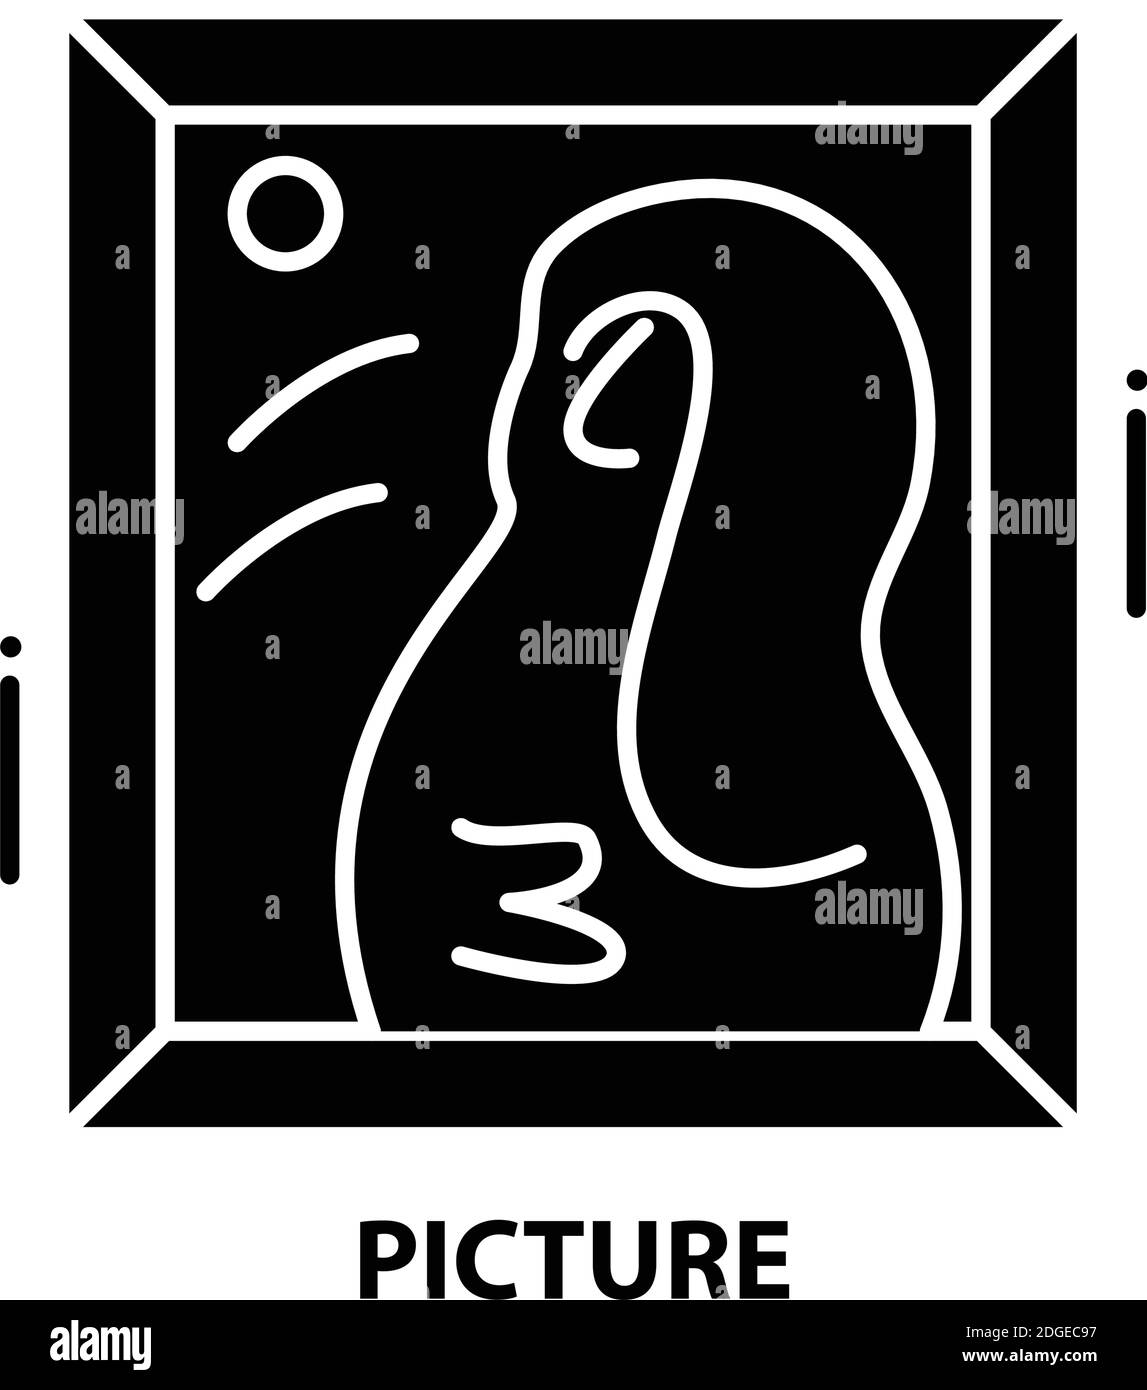 icona immagine, segno vettoriale nero con tratti modificabili, illustrazione concettuale Illustrazione Vettoriale